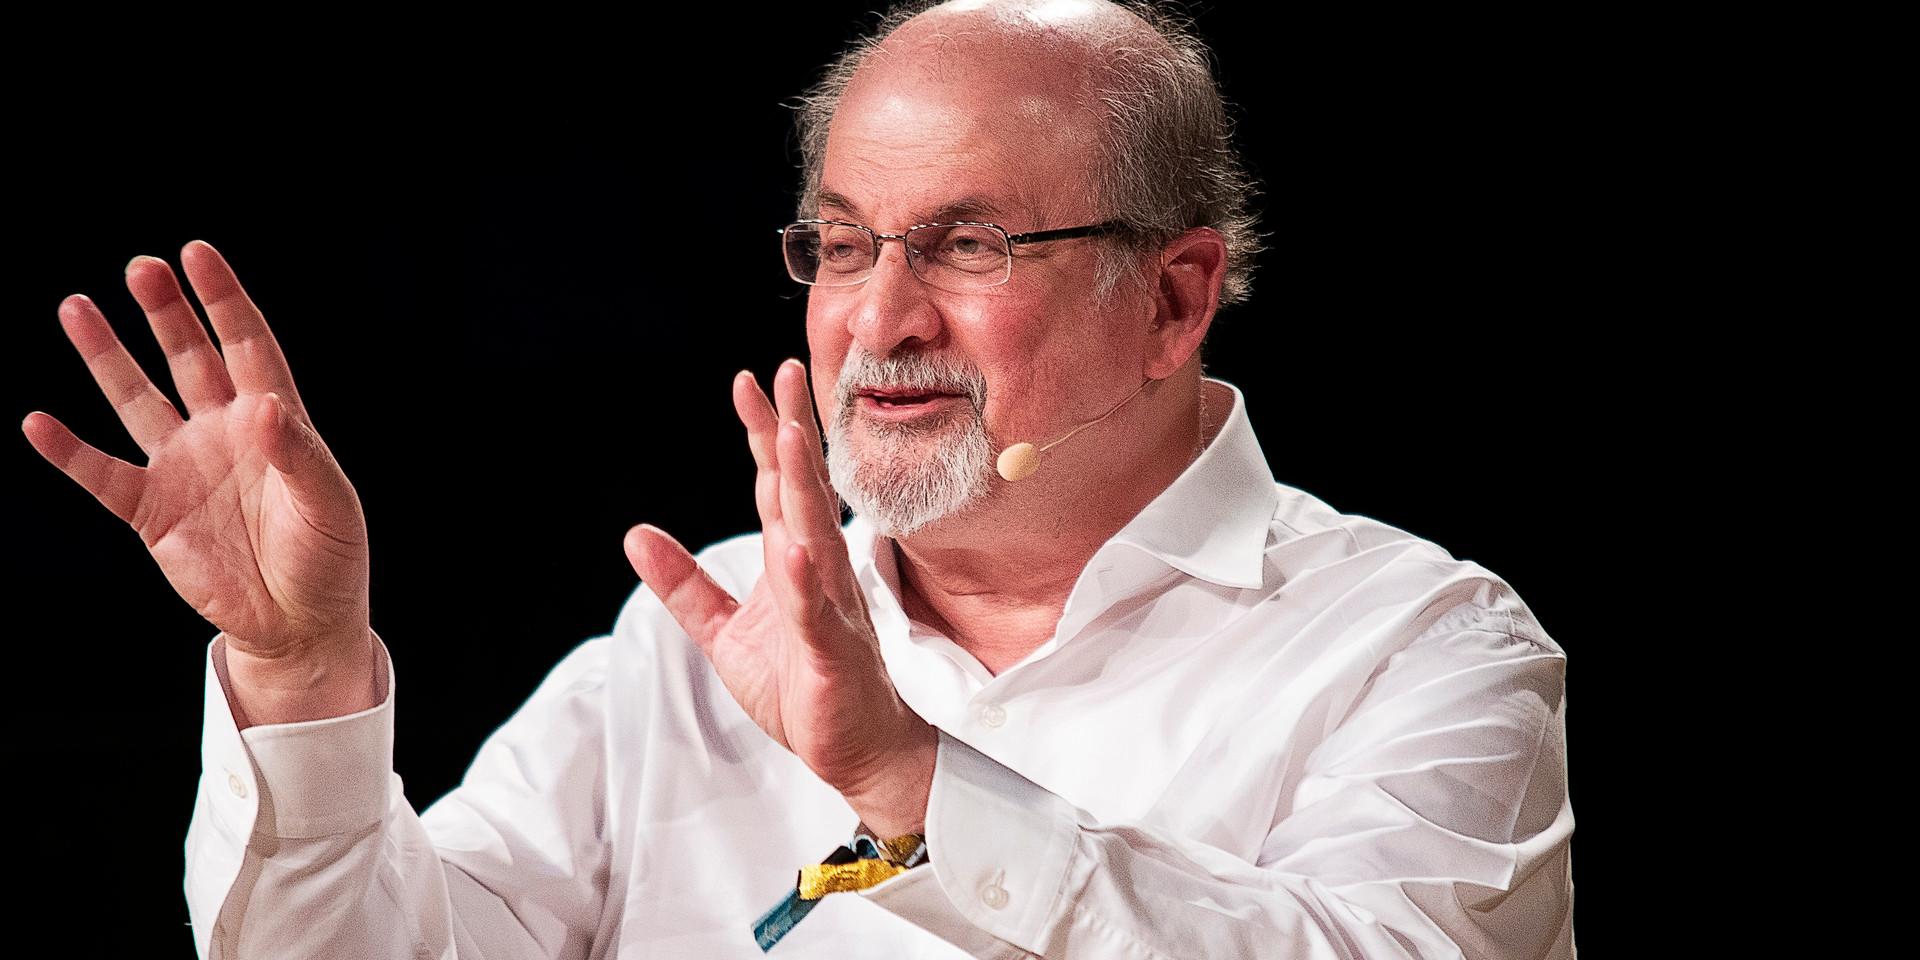 Våldsdåd. Under ett framträdande i New York knivhöggs den 75-åriga författaren Salman Rushdie.